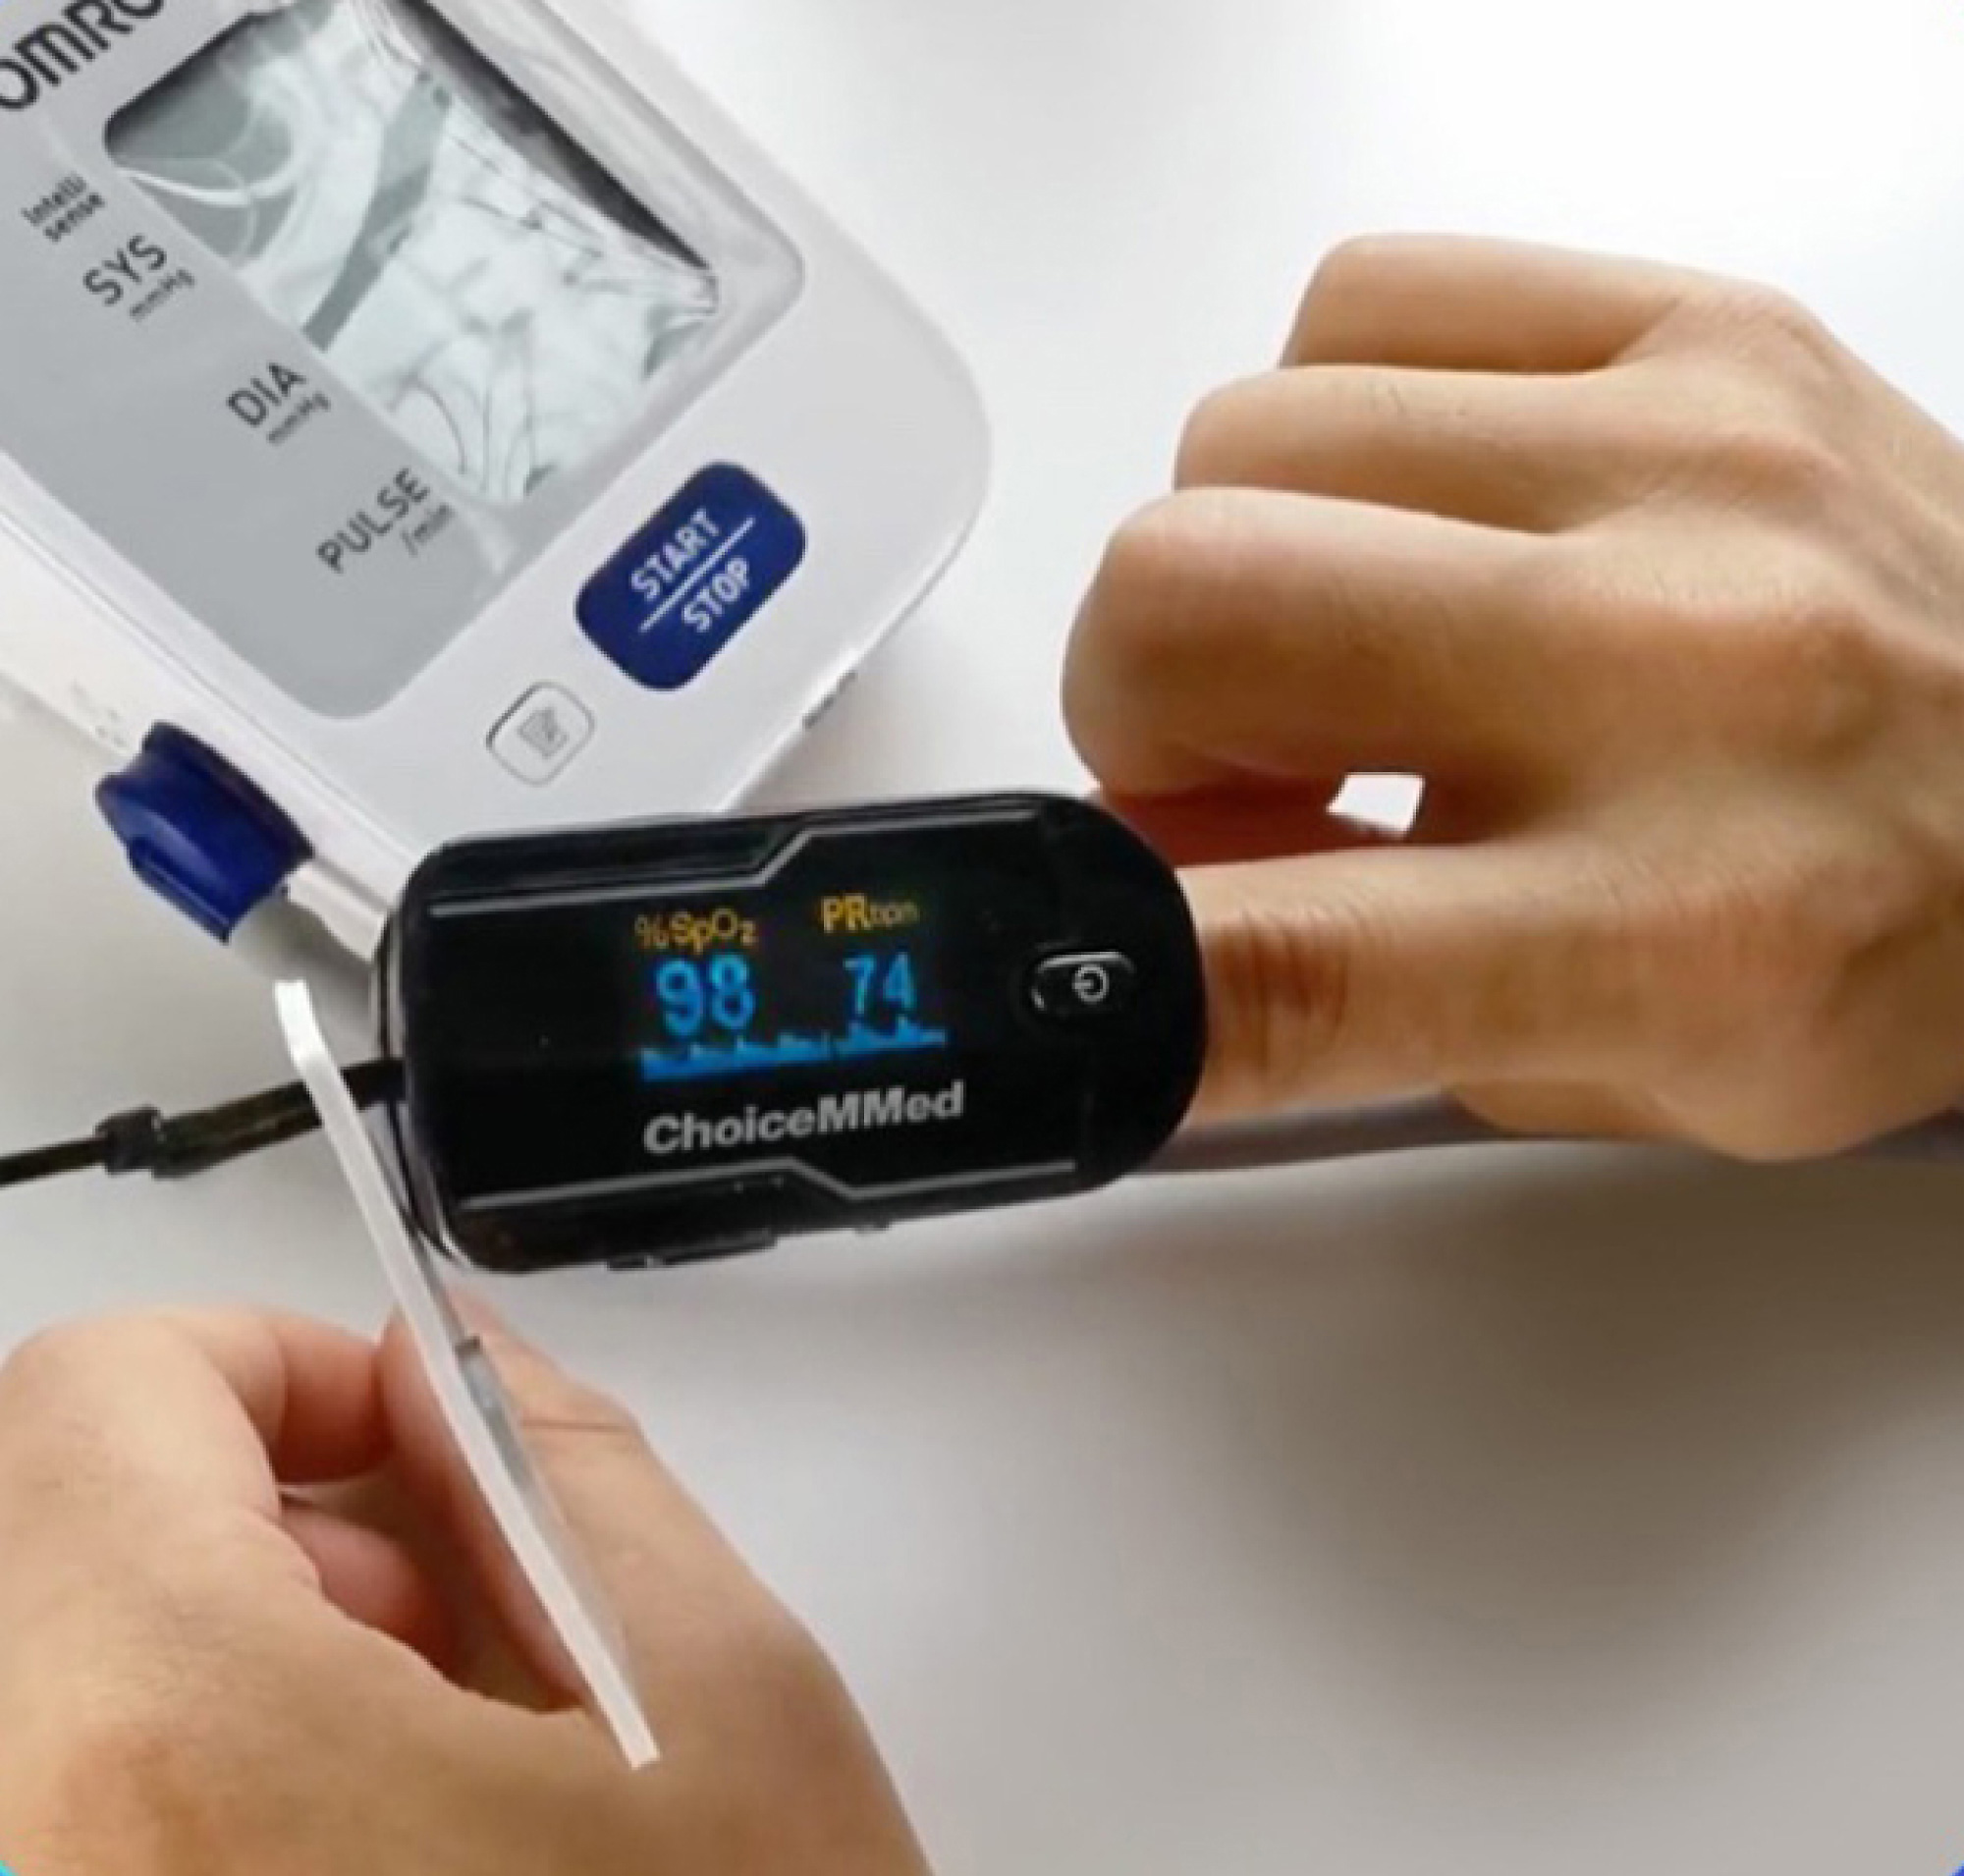 Oseba uporablja pulzni oksimeter na prstih za merjenje nasičenosti saturacije in hitrosti impulza, prikazanega na digitalnem zaslonu naprave.